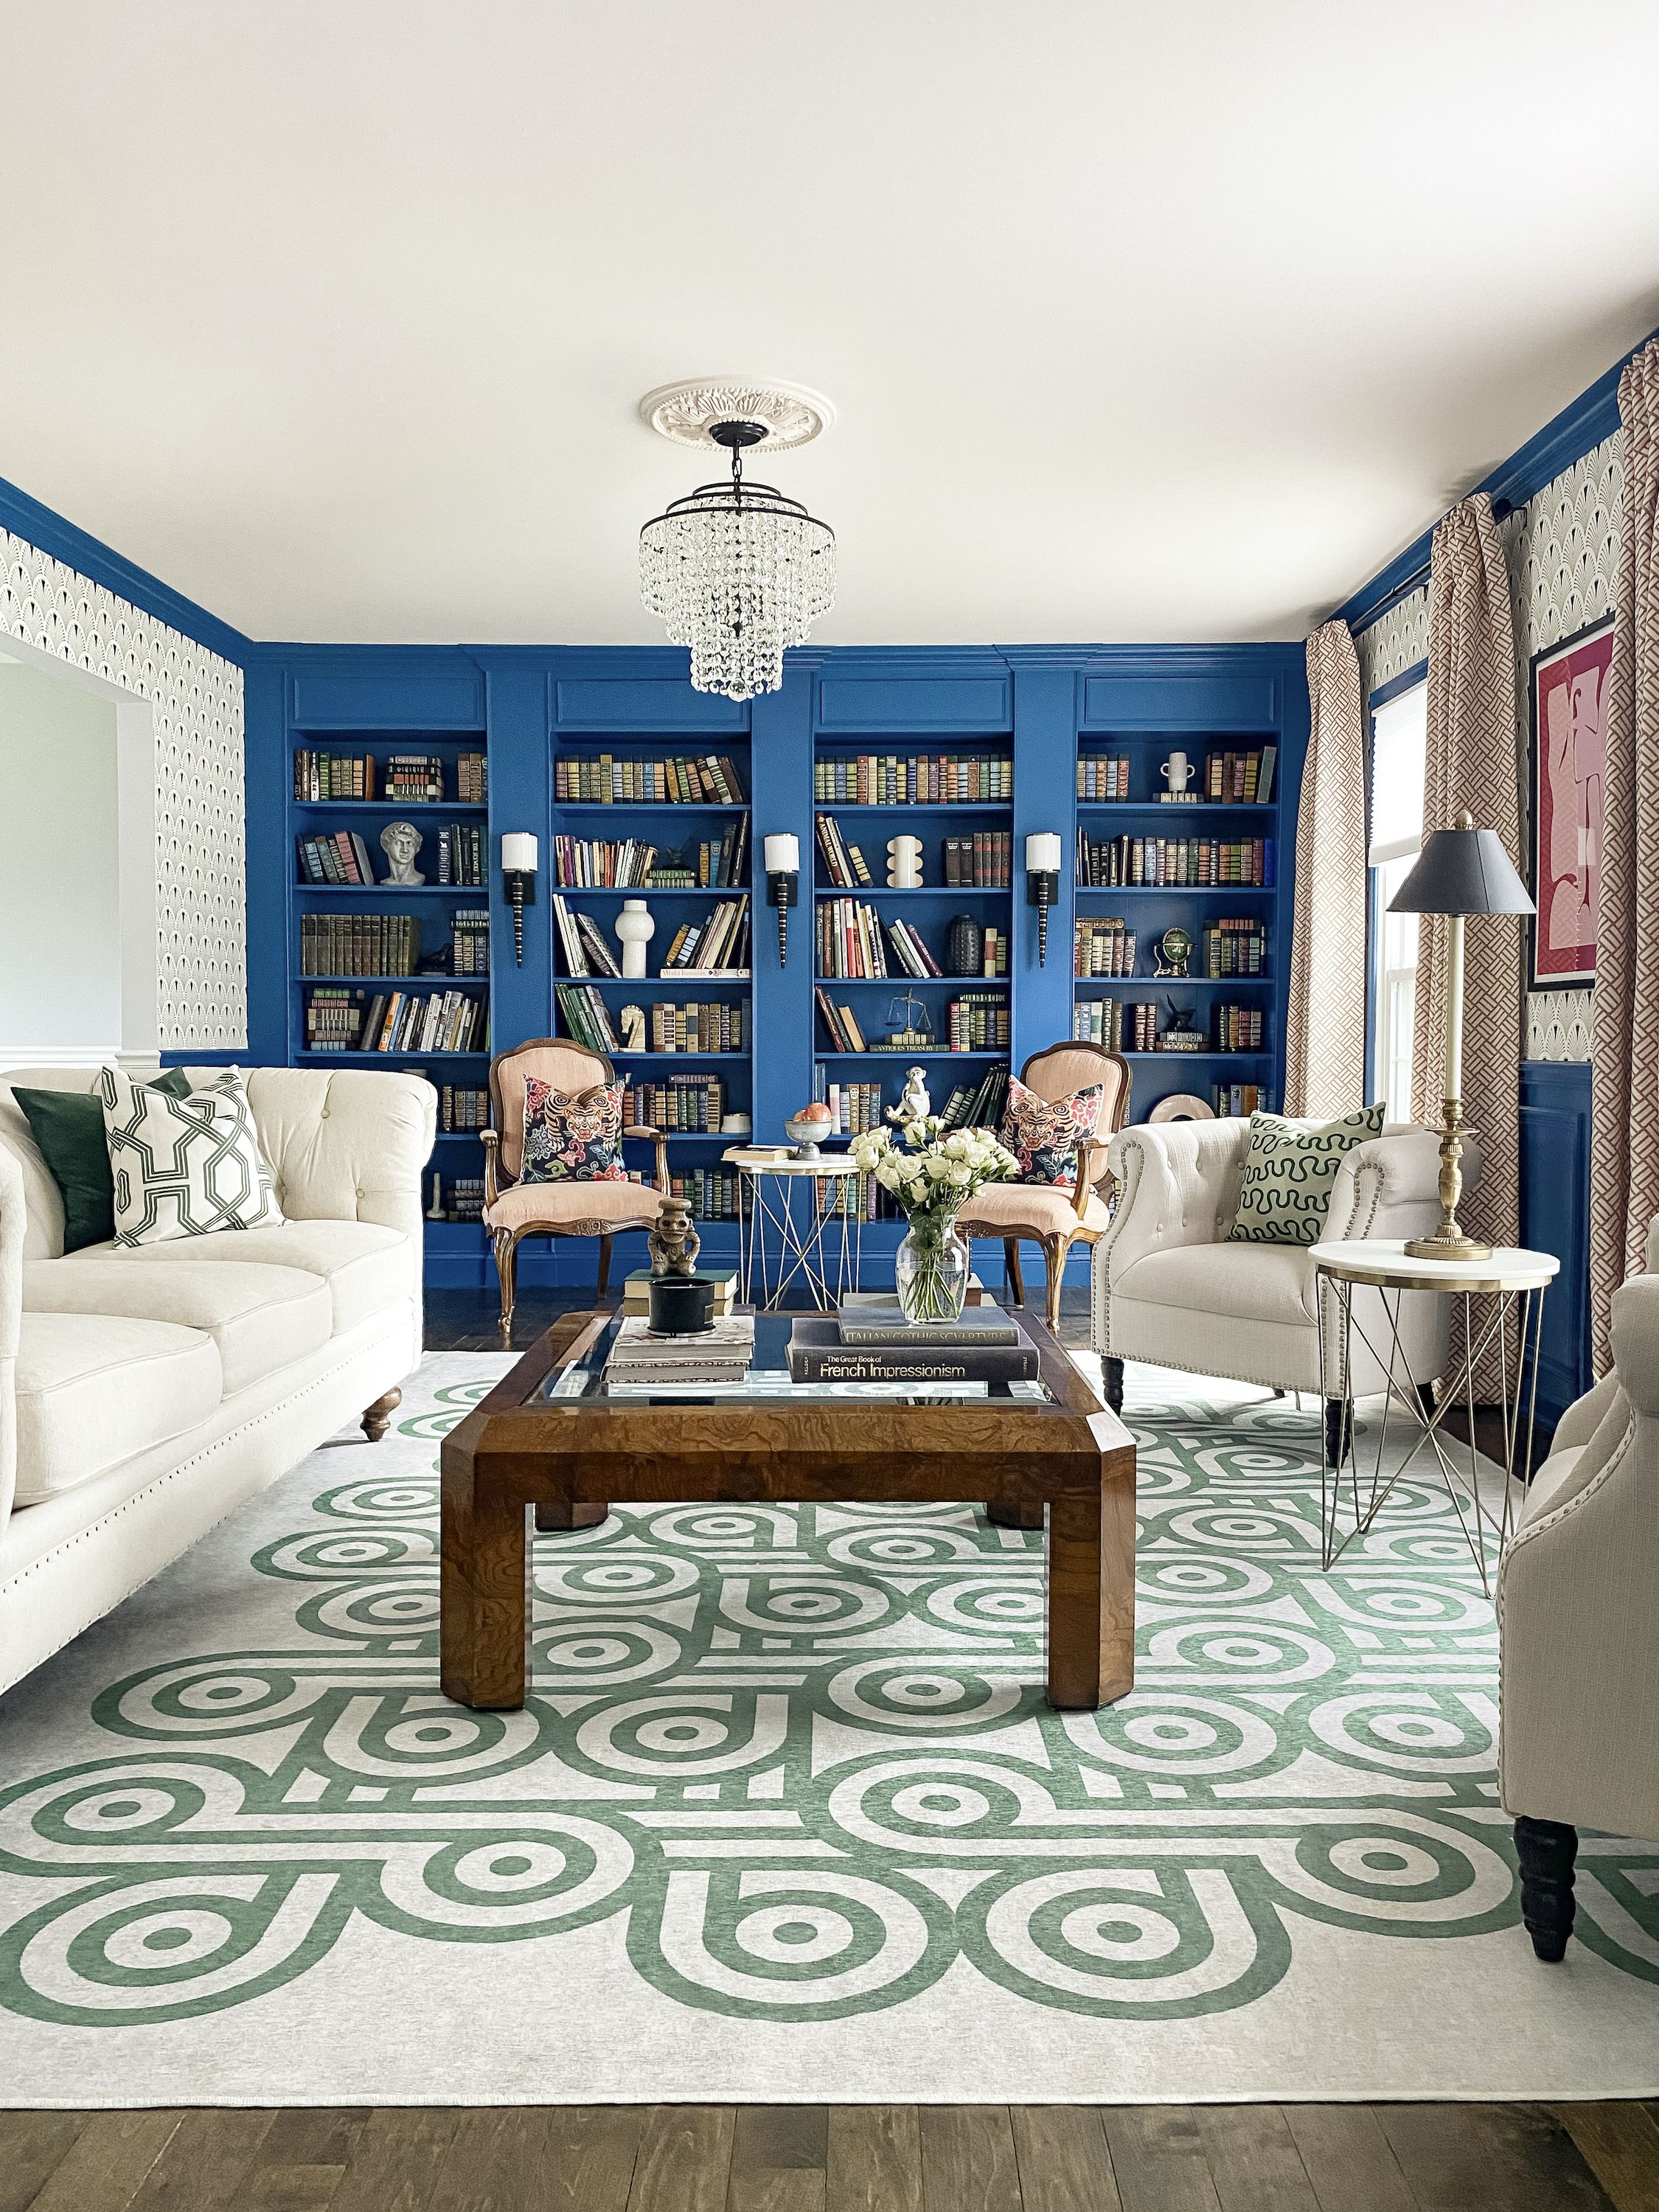 Louis Vuitton Logo Fashion Area Rug Rectangle Living Room Decor